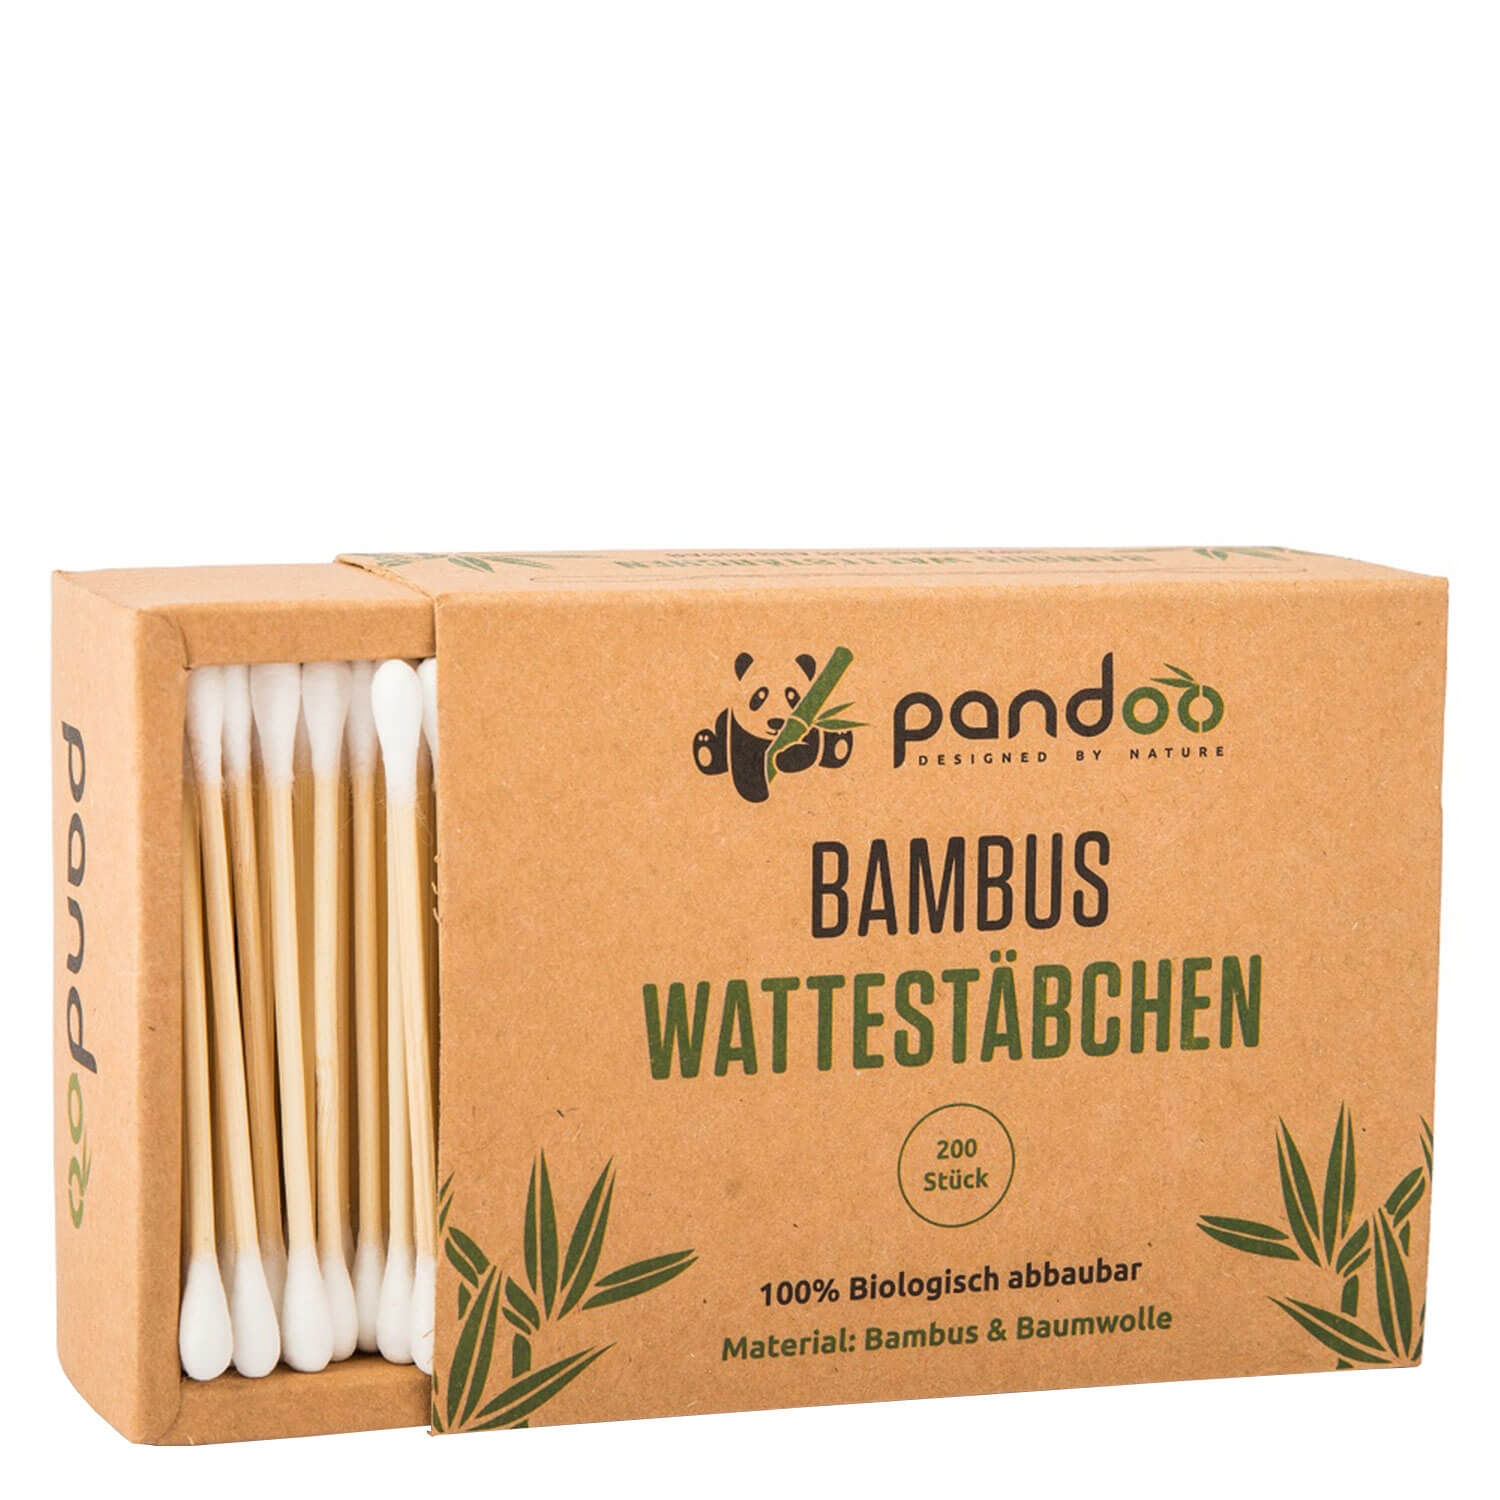 Produktbild von pandoo - Bambus Wattestäbchen